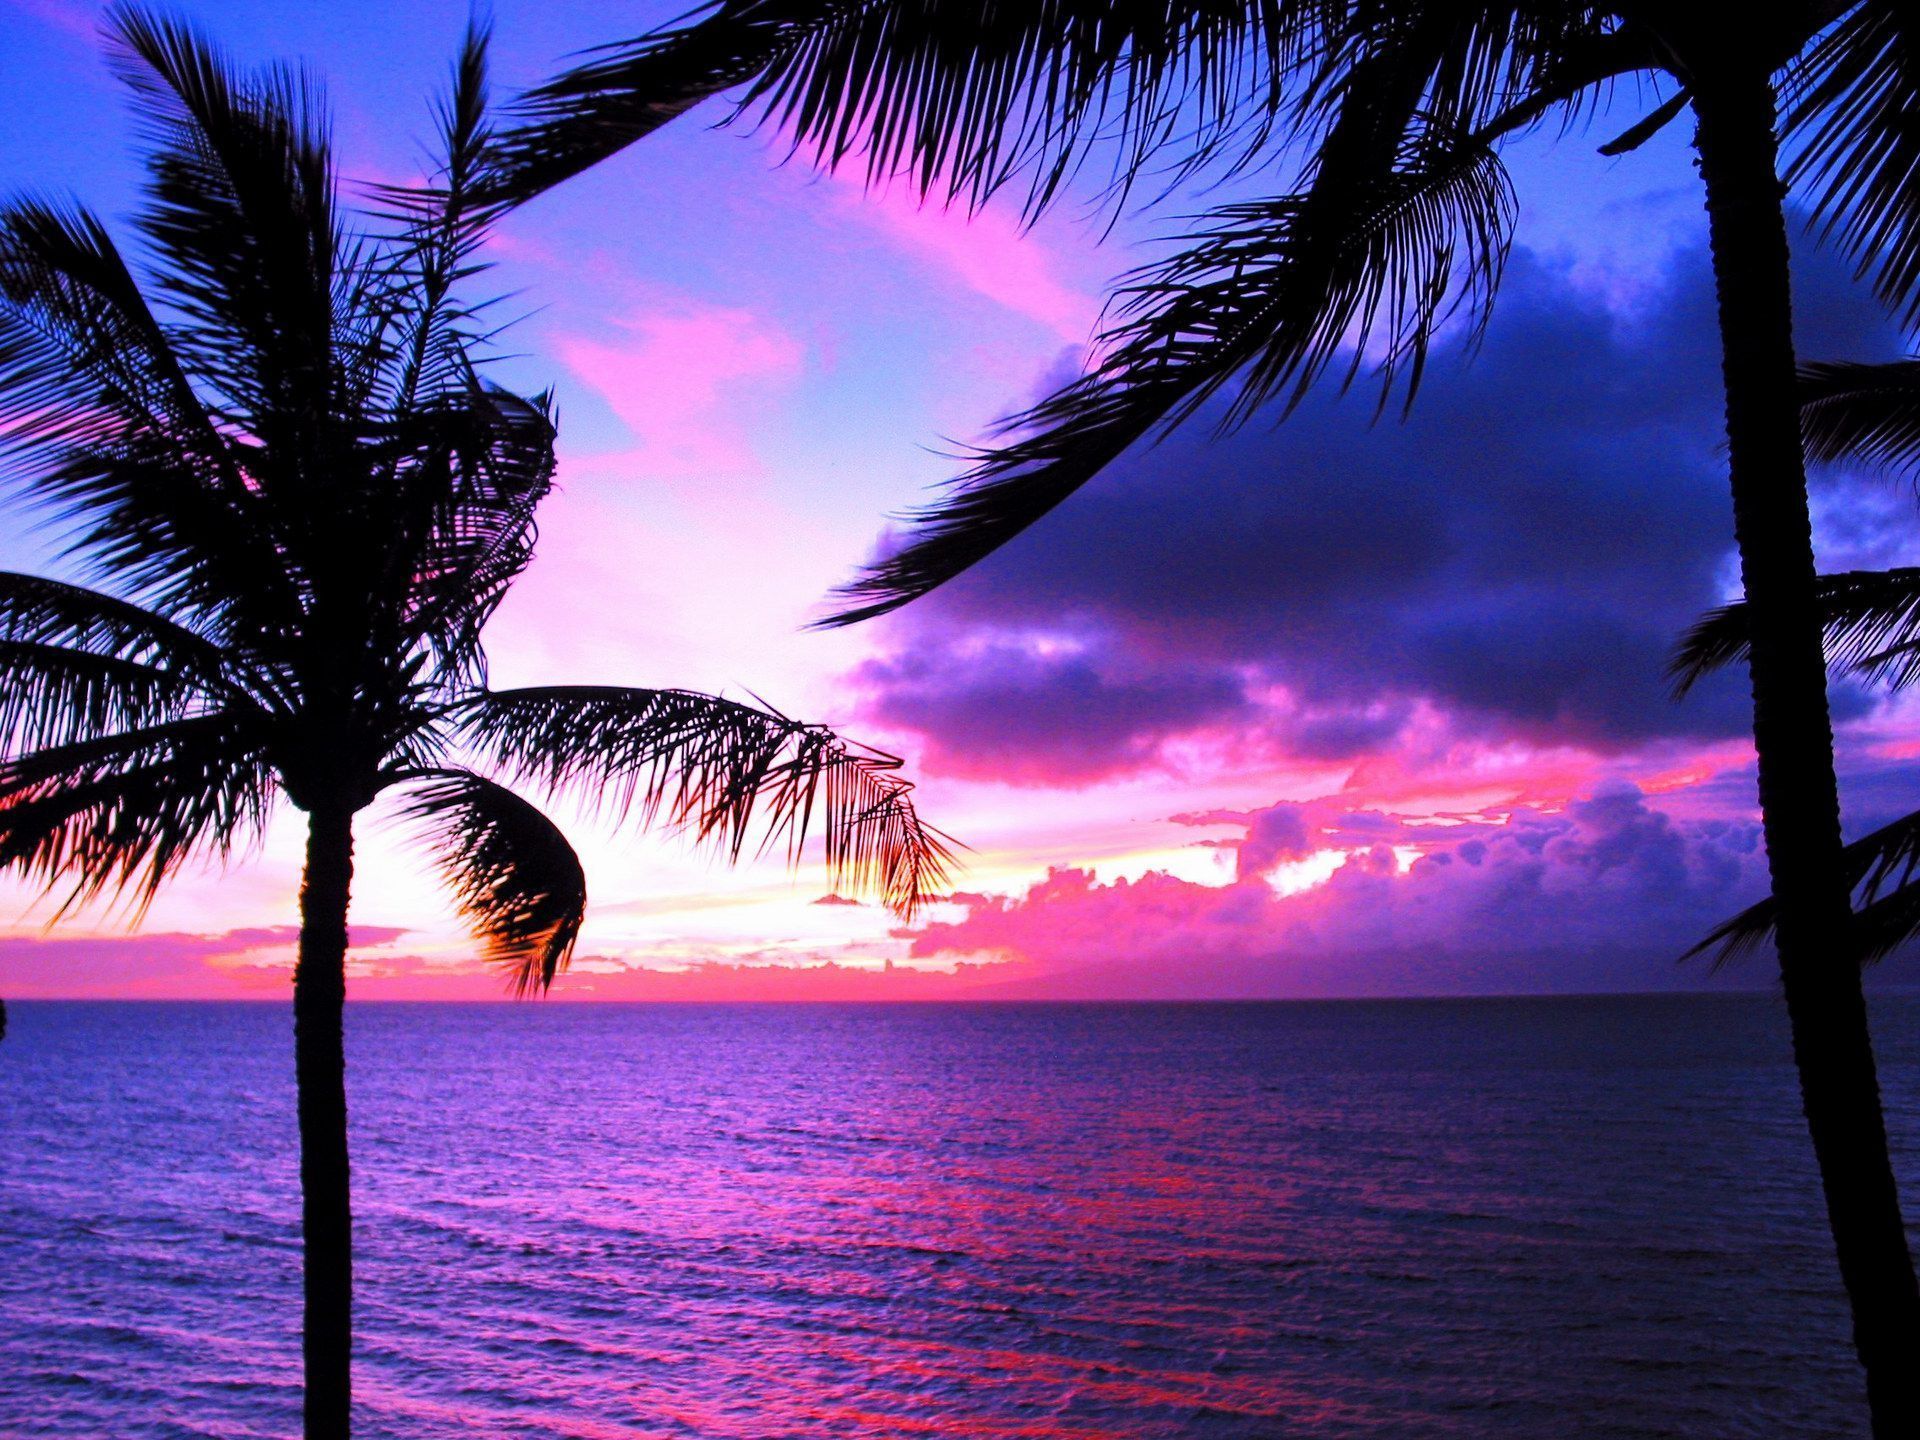 Hawaii Sunset Wallpaper Image. Sunset wallpaper, Sunsets hawaii, Beach wallpaper